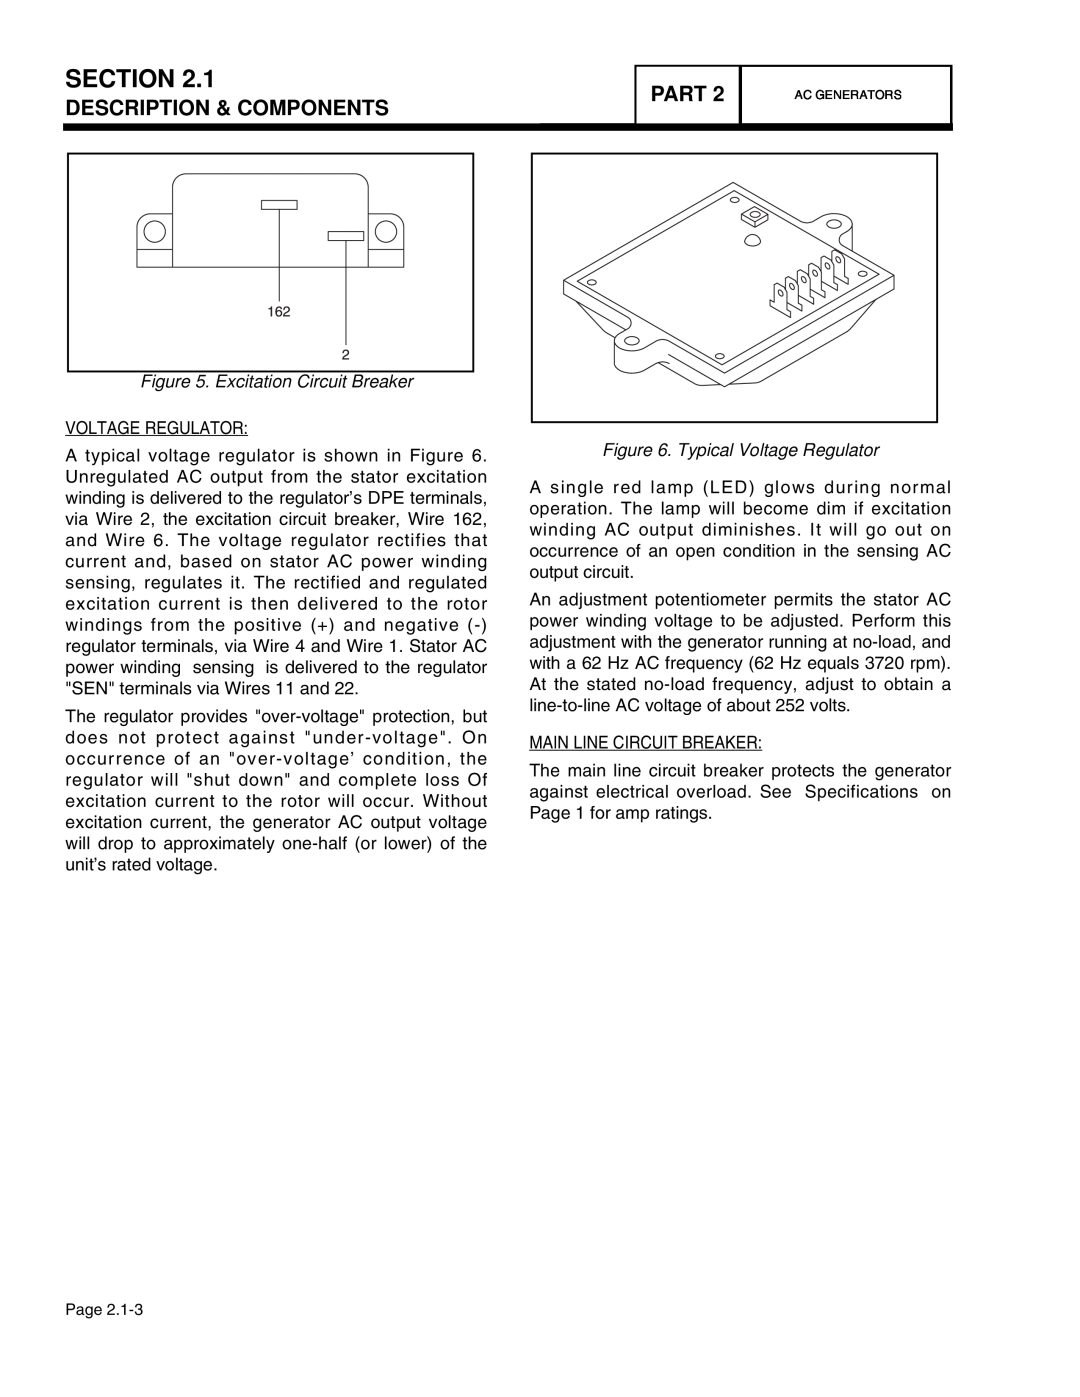 Guardian Technologies 4758 Section, Description & Components, Part, Excitation Circuit Breaker, Typical Voltage Regulator 